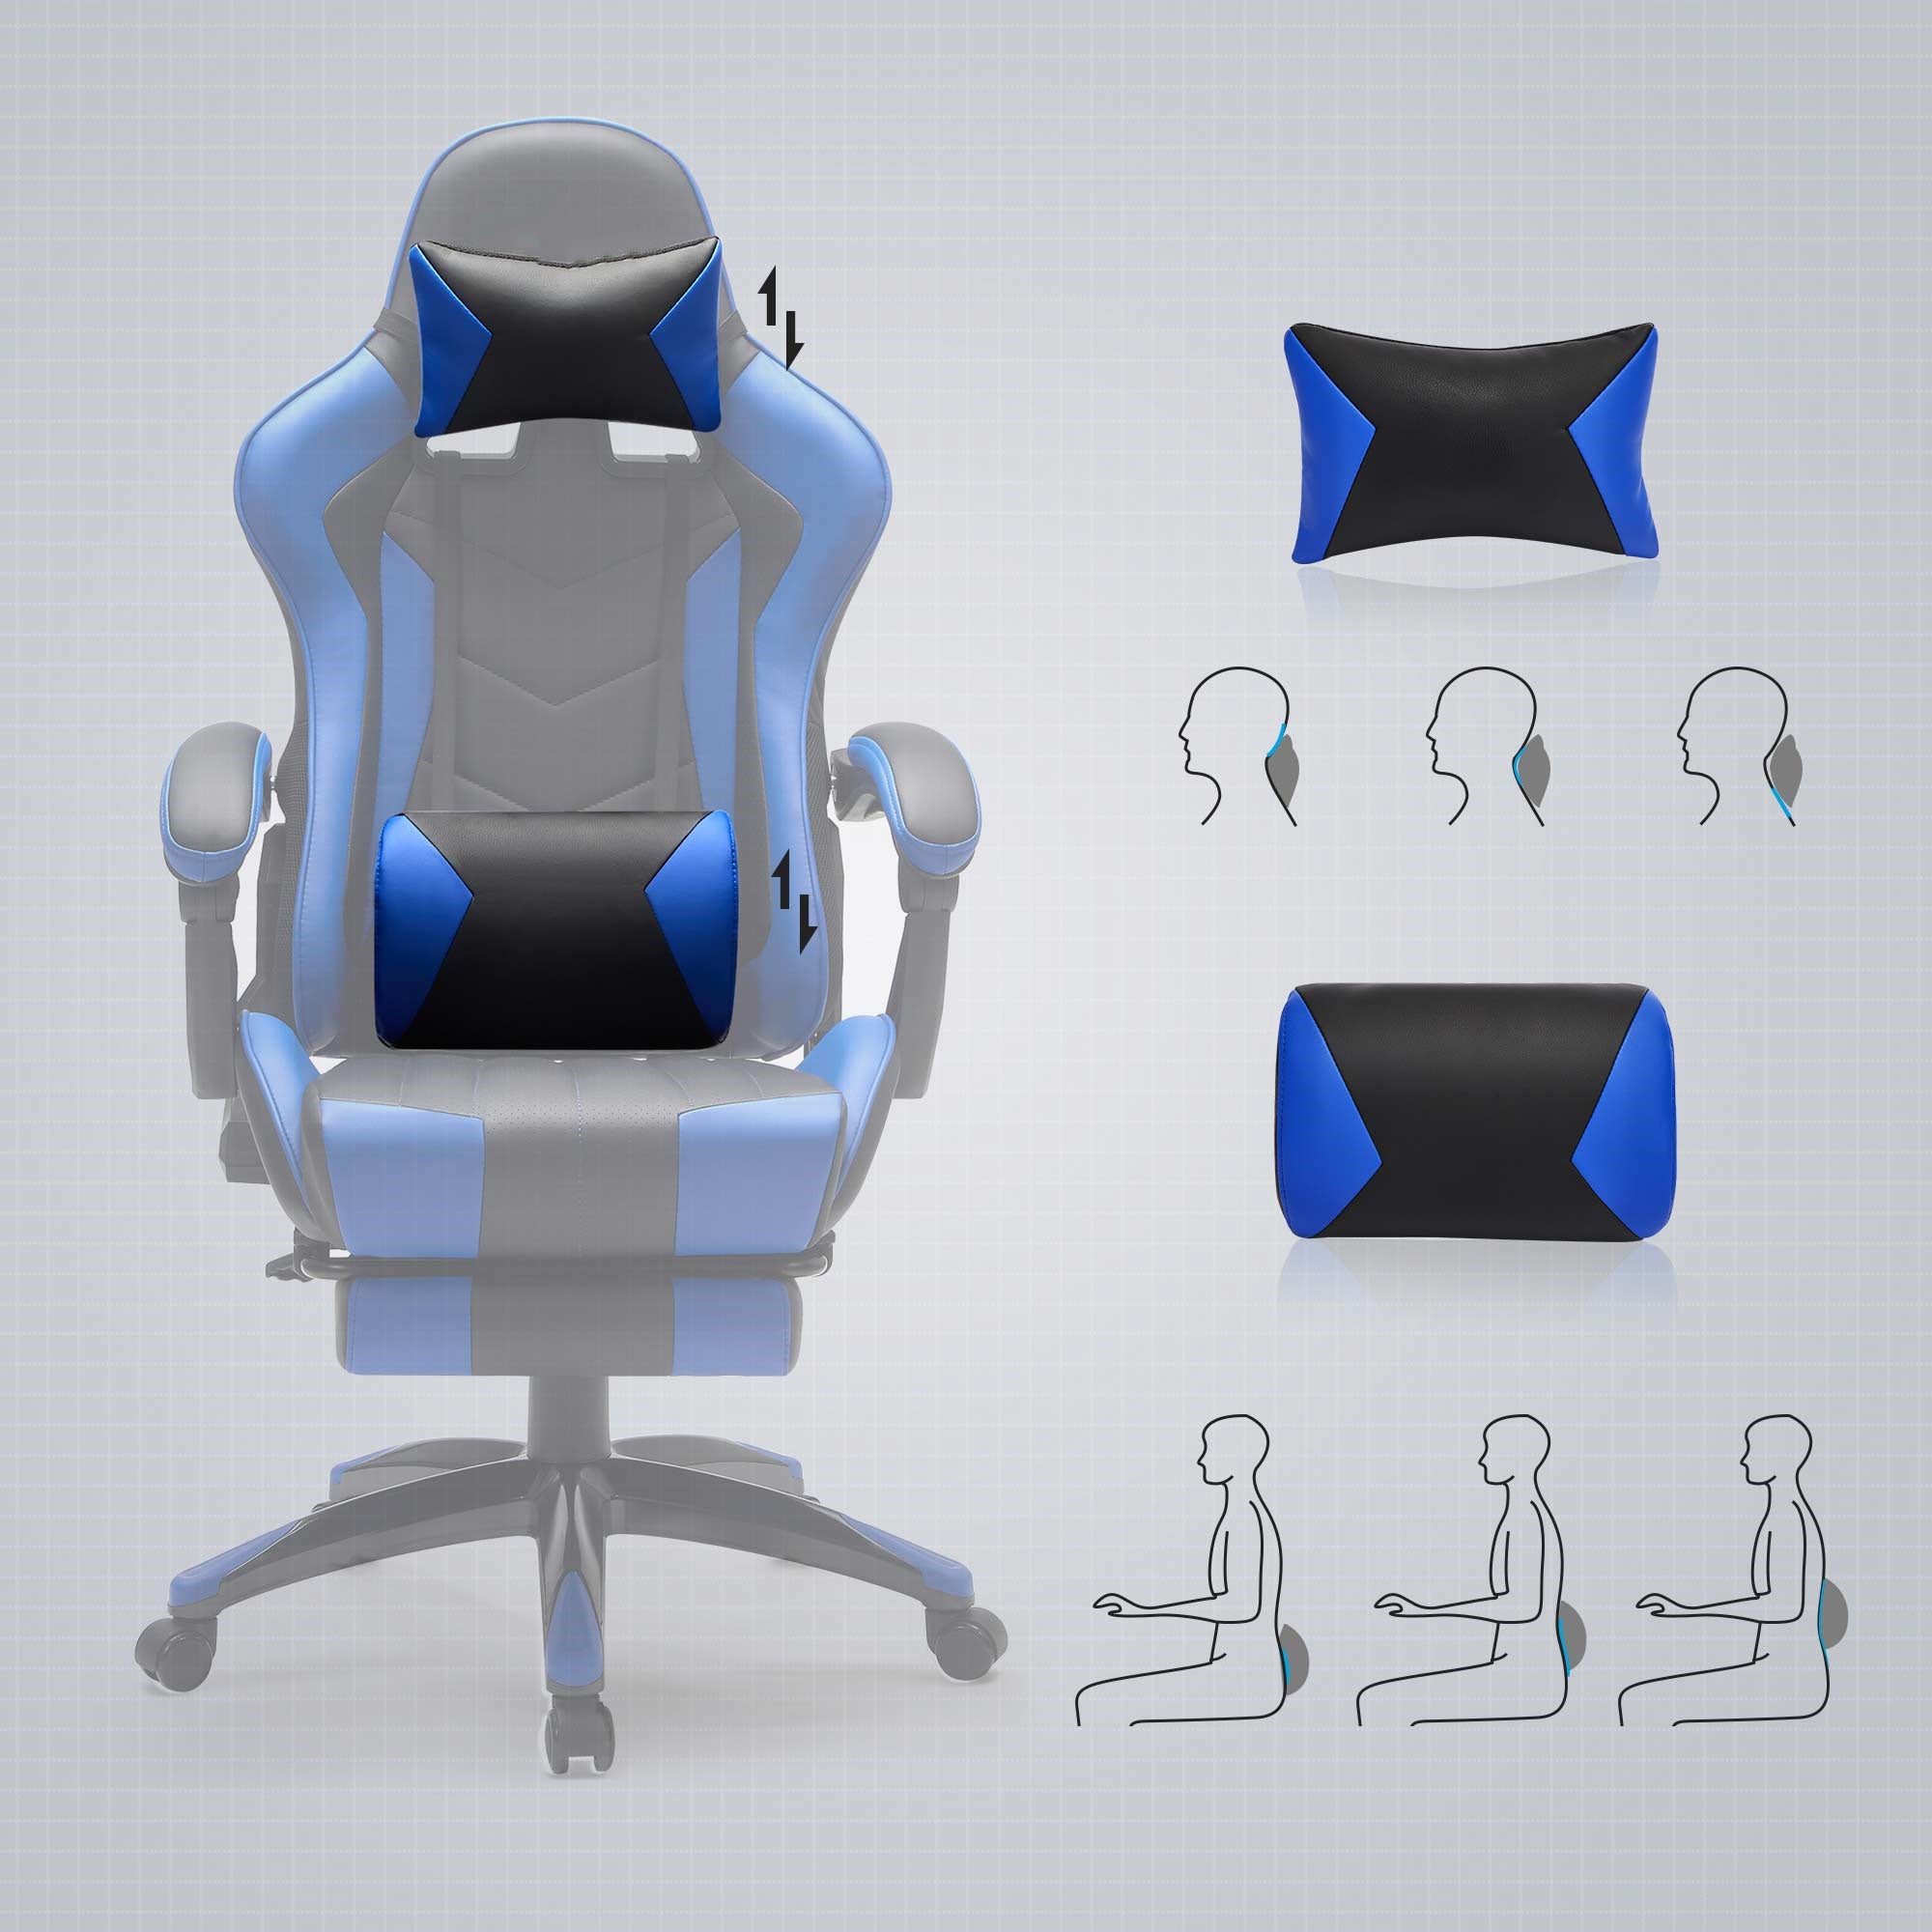 Gaming Stuhl Schreibtischstuhl bis 150 kg belastbar Schwarz-Blau